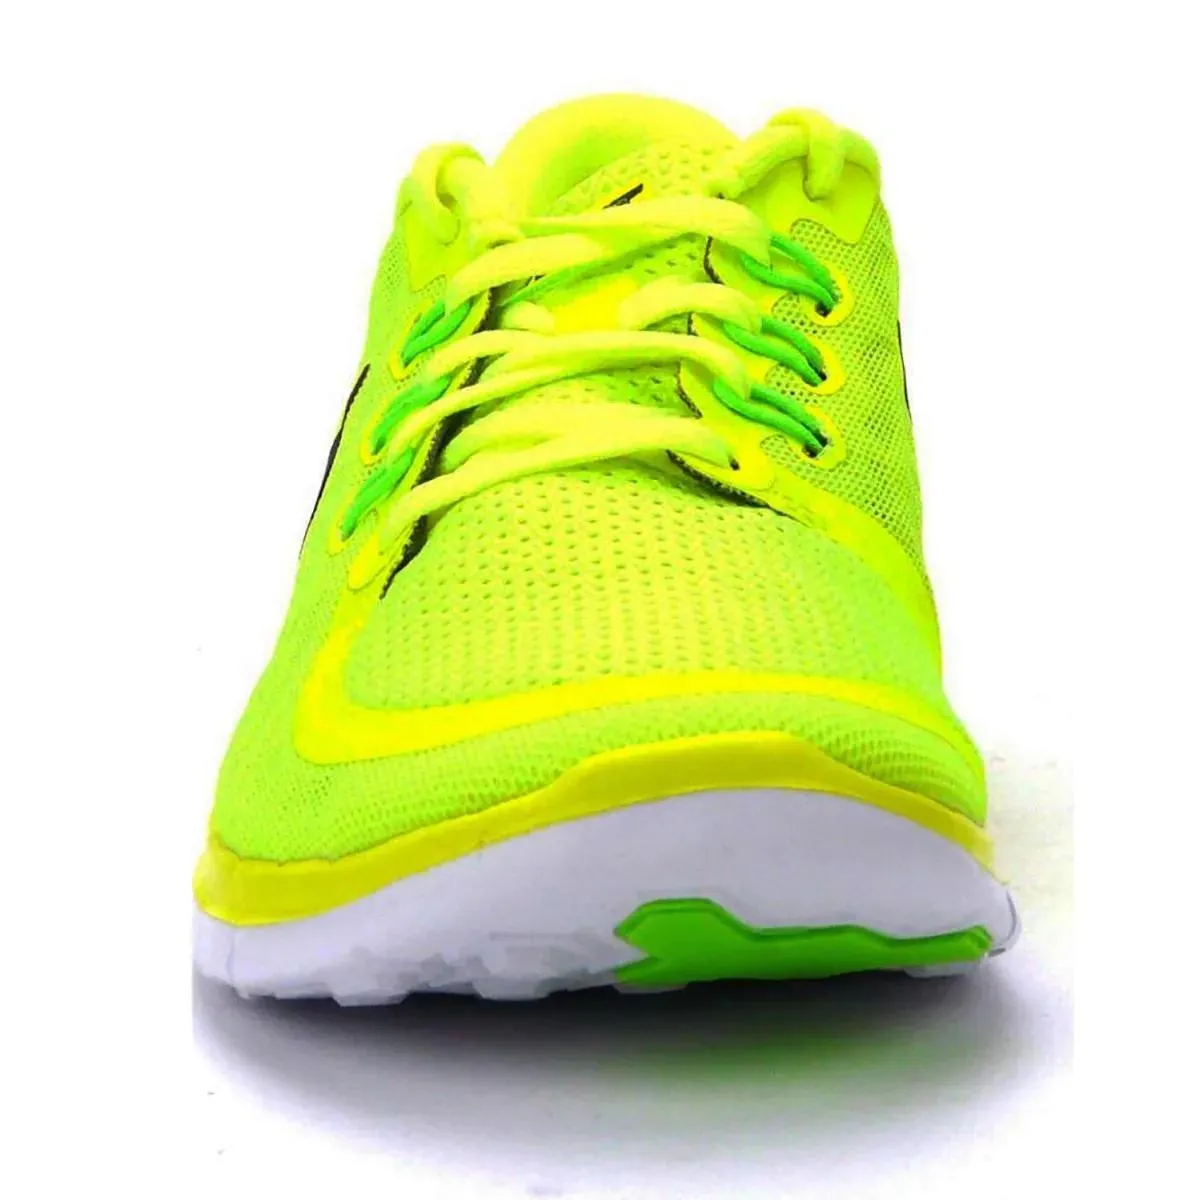 Nike Tenisice NIKE FREE 5.0 (GS) 